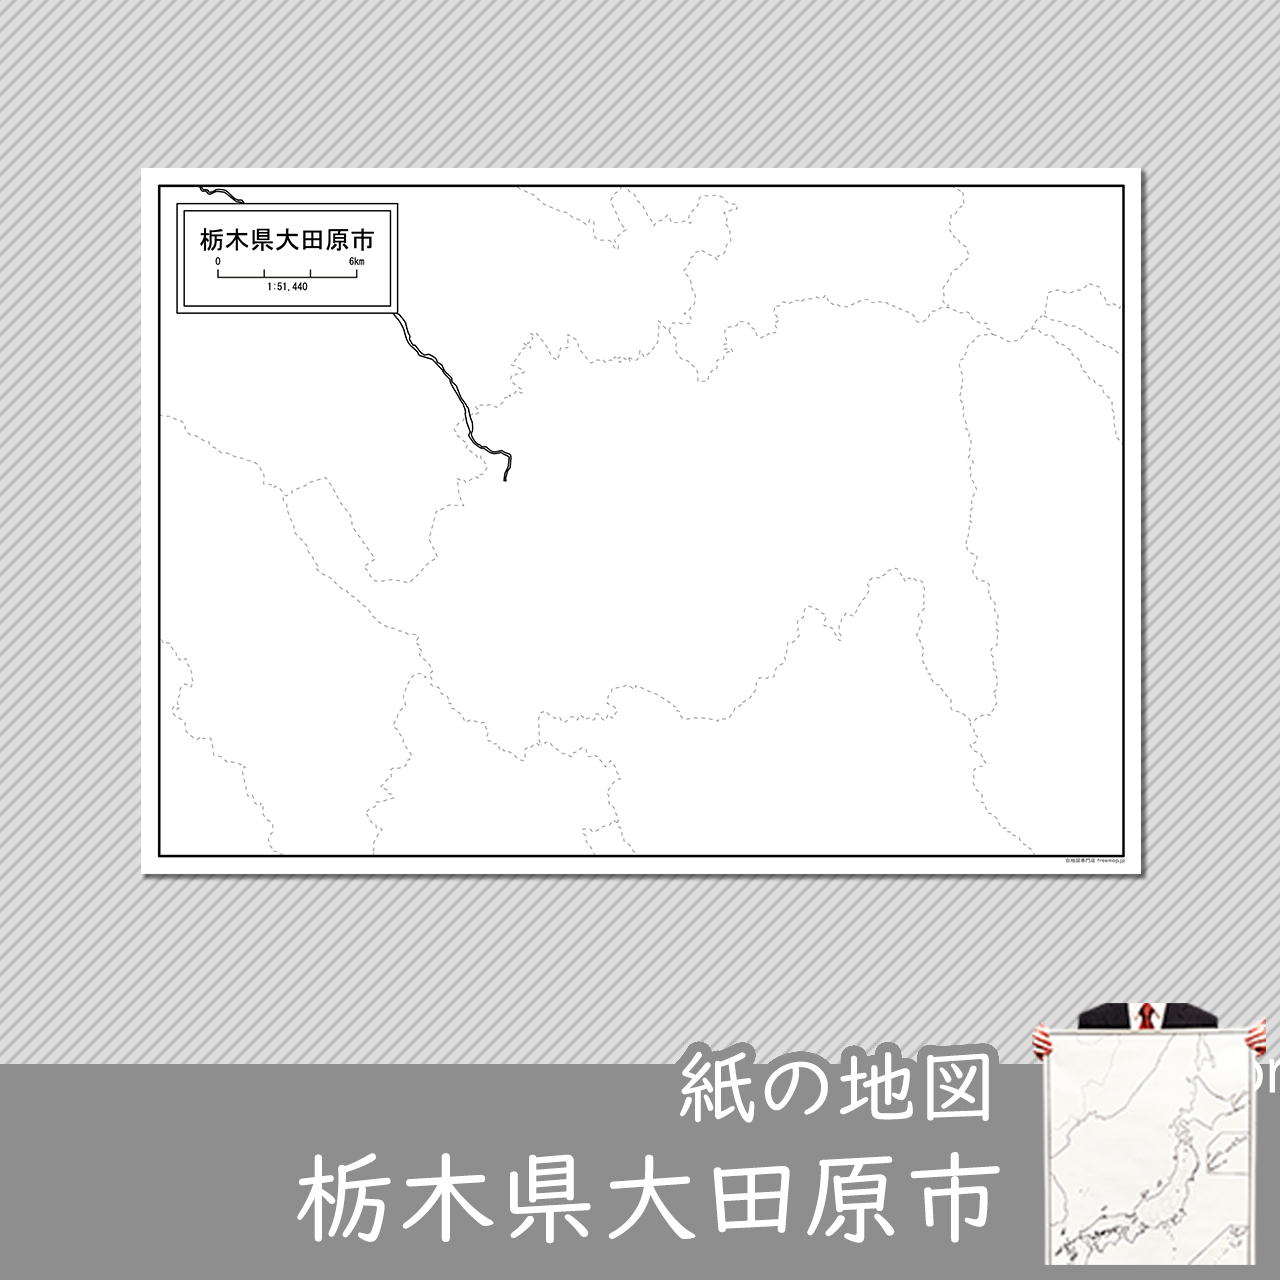 大田原市の紙の白地図のサムネイル